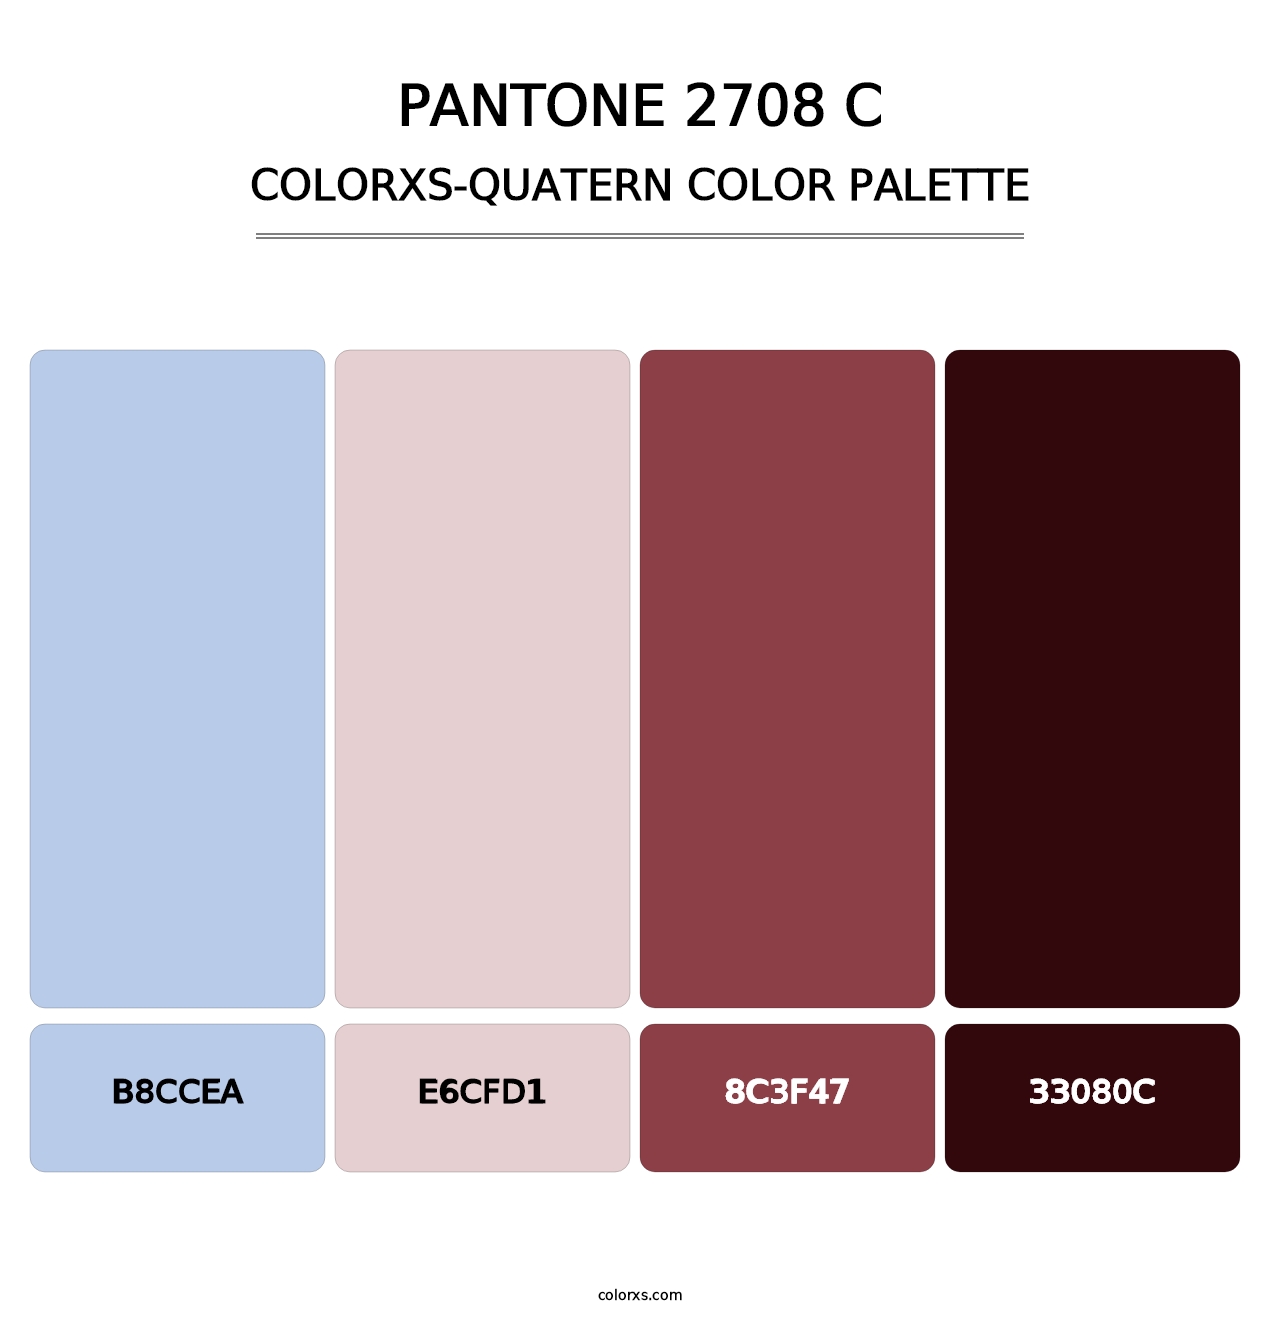 PANTONE 2708 C - Colorxs Quatern Palette